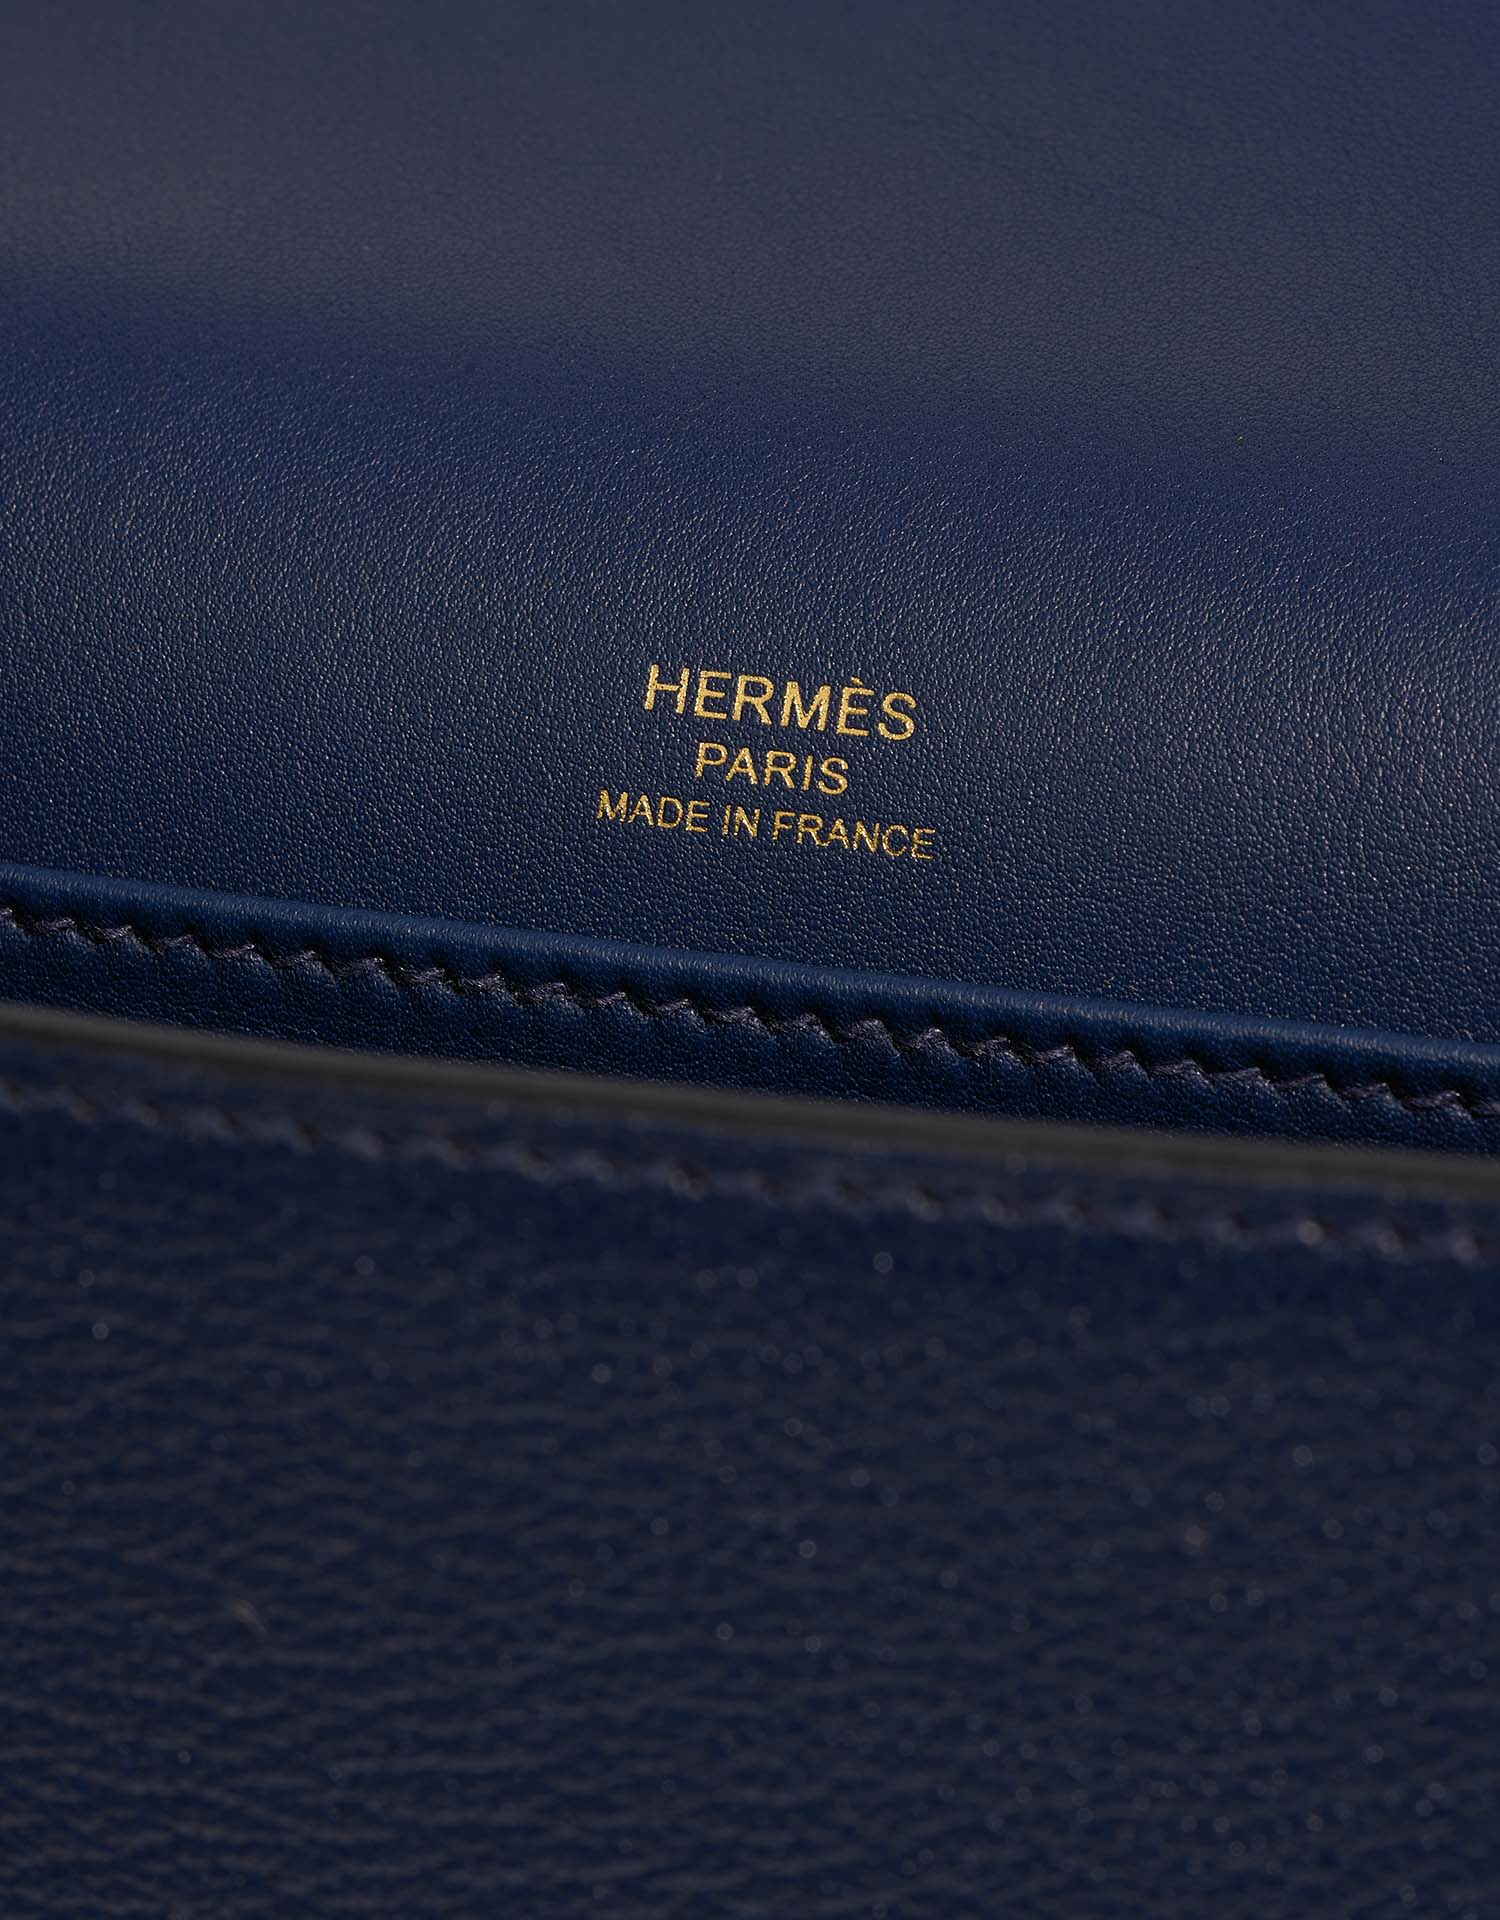 Hermès Geta Navy Logo | Verkaufen Sie Ihre Designer-Tasche auf Saclab.com